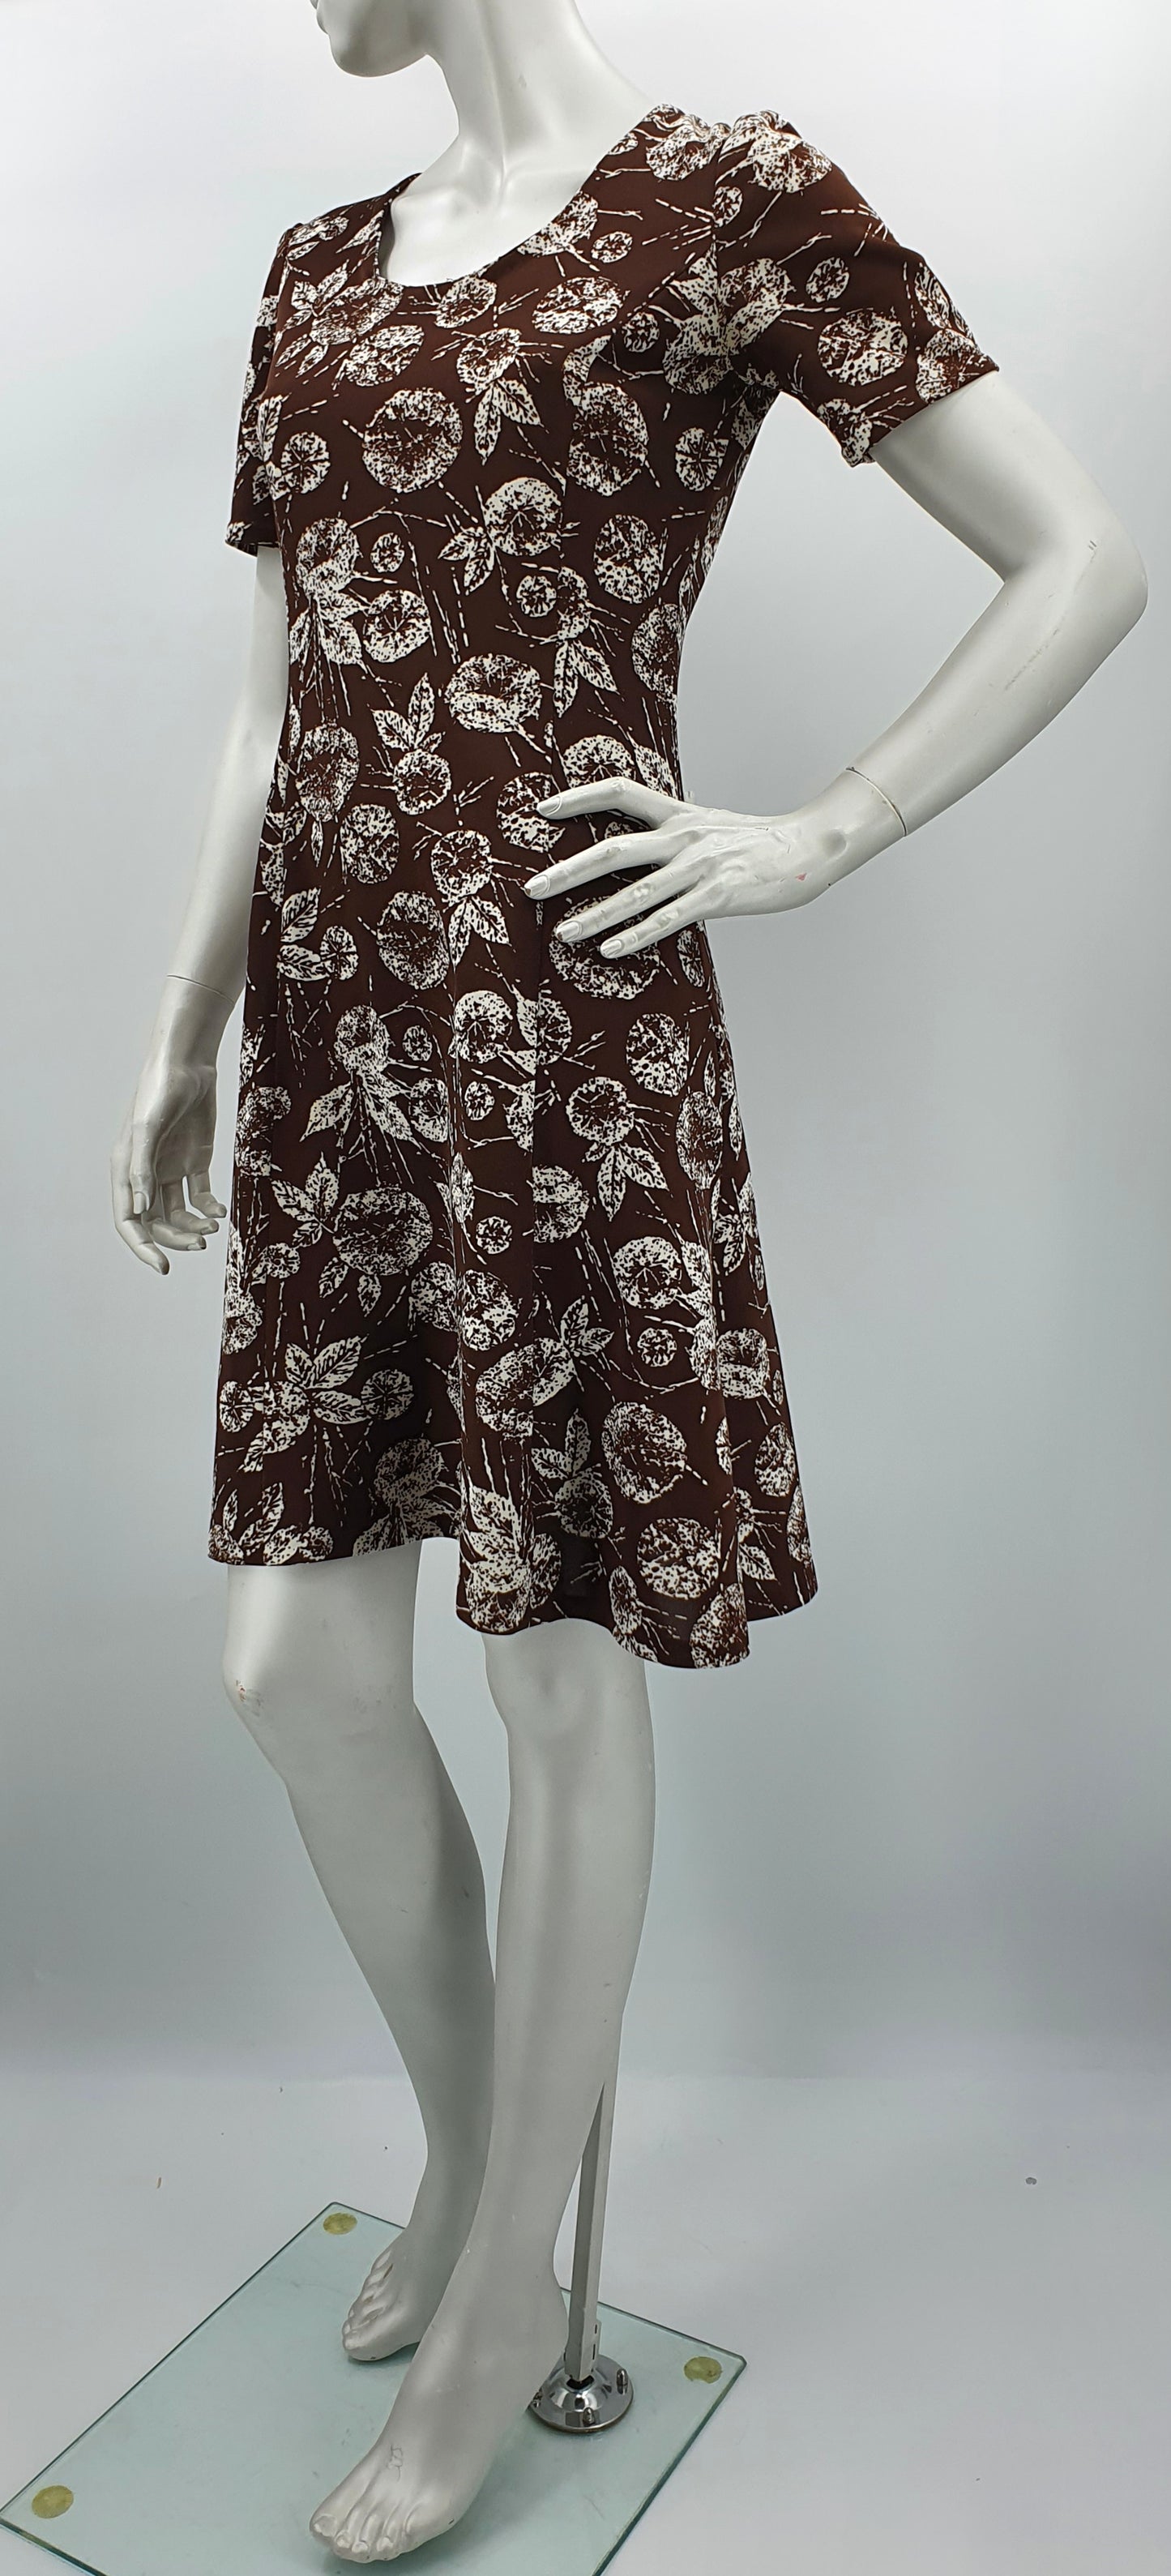 Tummanruskea lehtikuvioinen mekko, 90-luku, koko 34-36